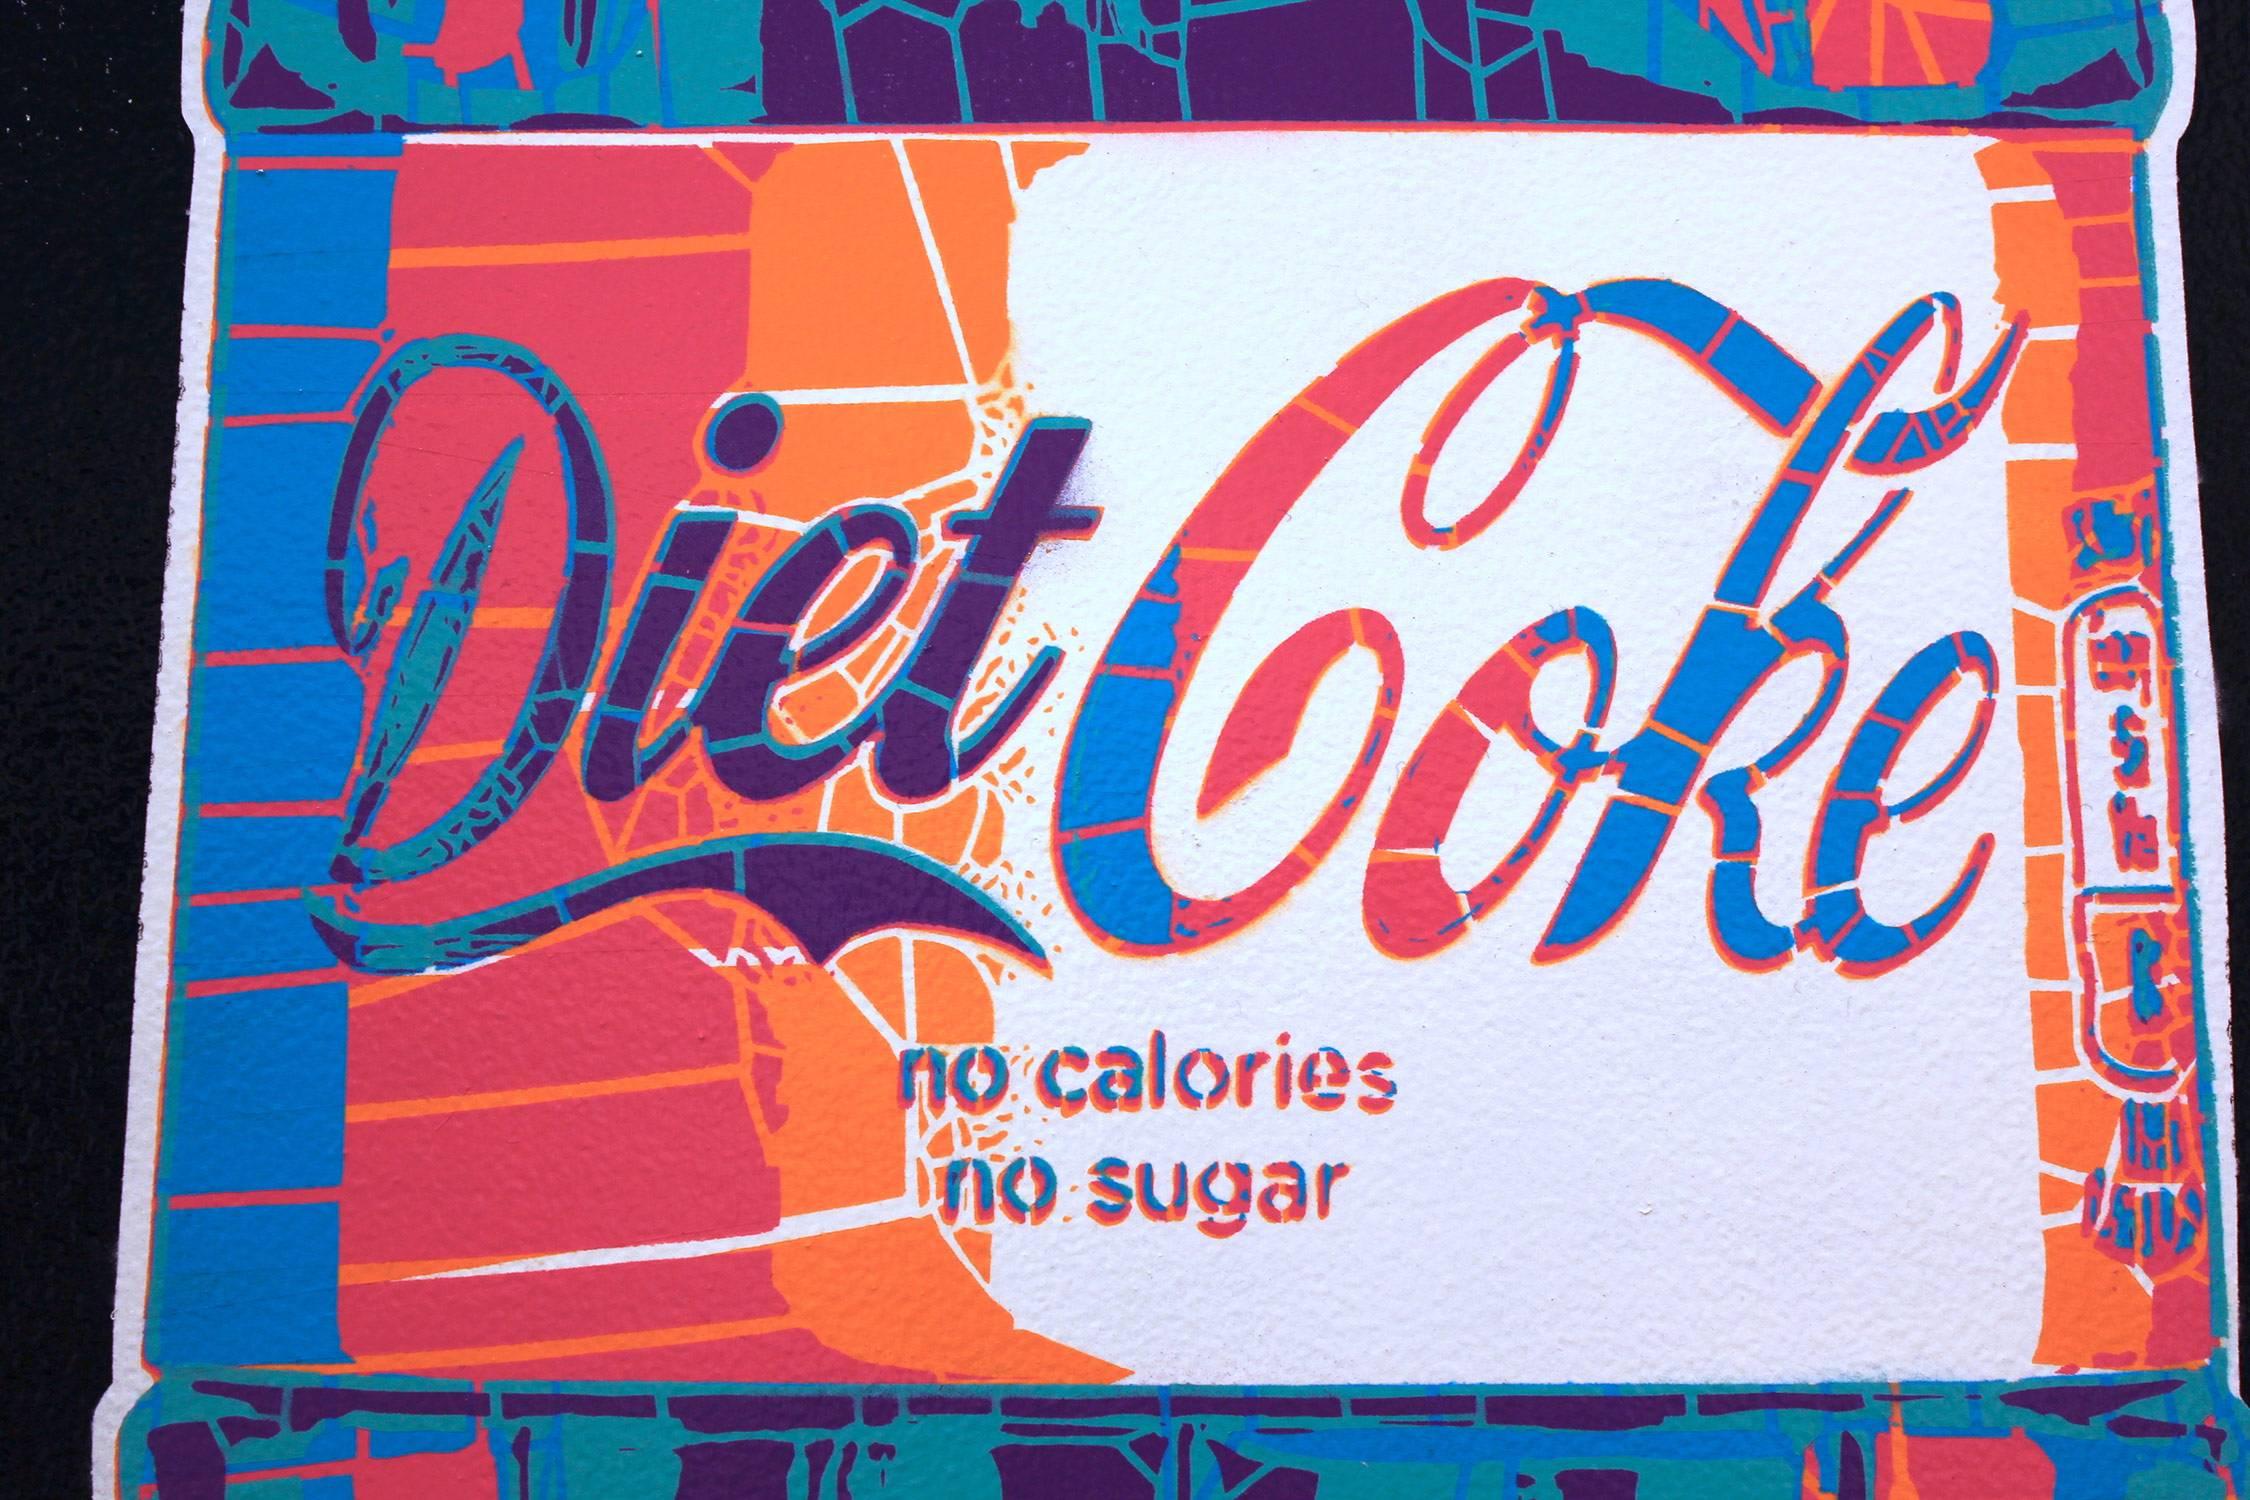 Diet Coke Pop - Pop Art Painting by Campbell la Pun